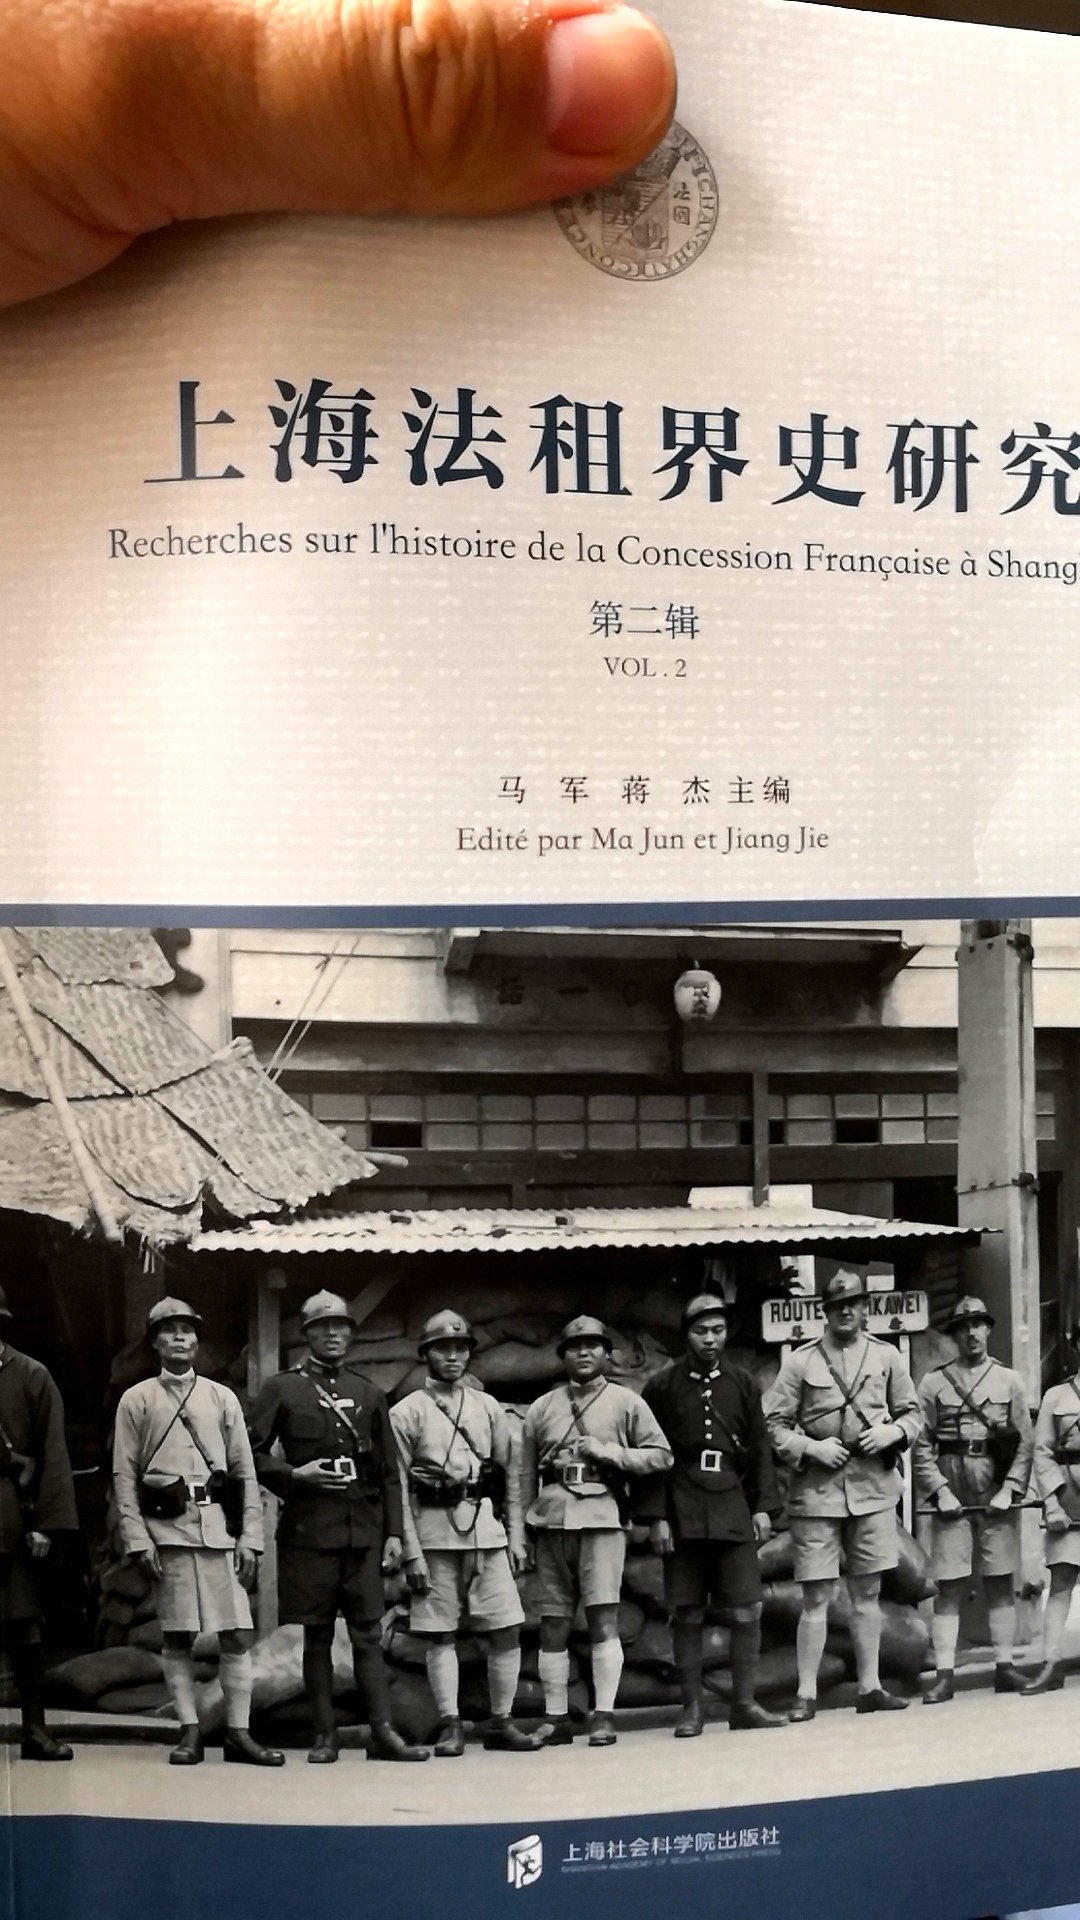 这本书应该是《〔上海法租界史〕研究》，是对这个外国人写的，中国人翻译的书籍的研究。还是不错，能了解一下内容。